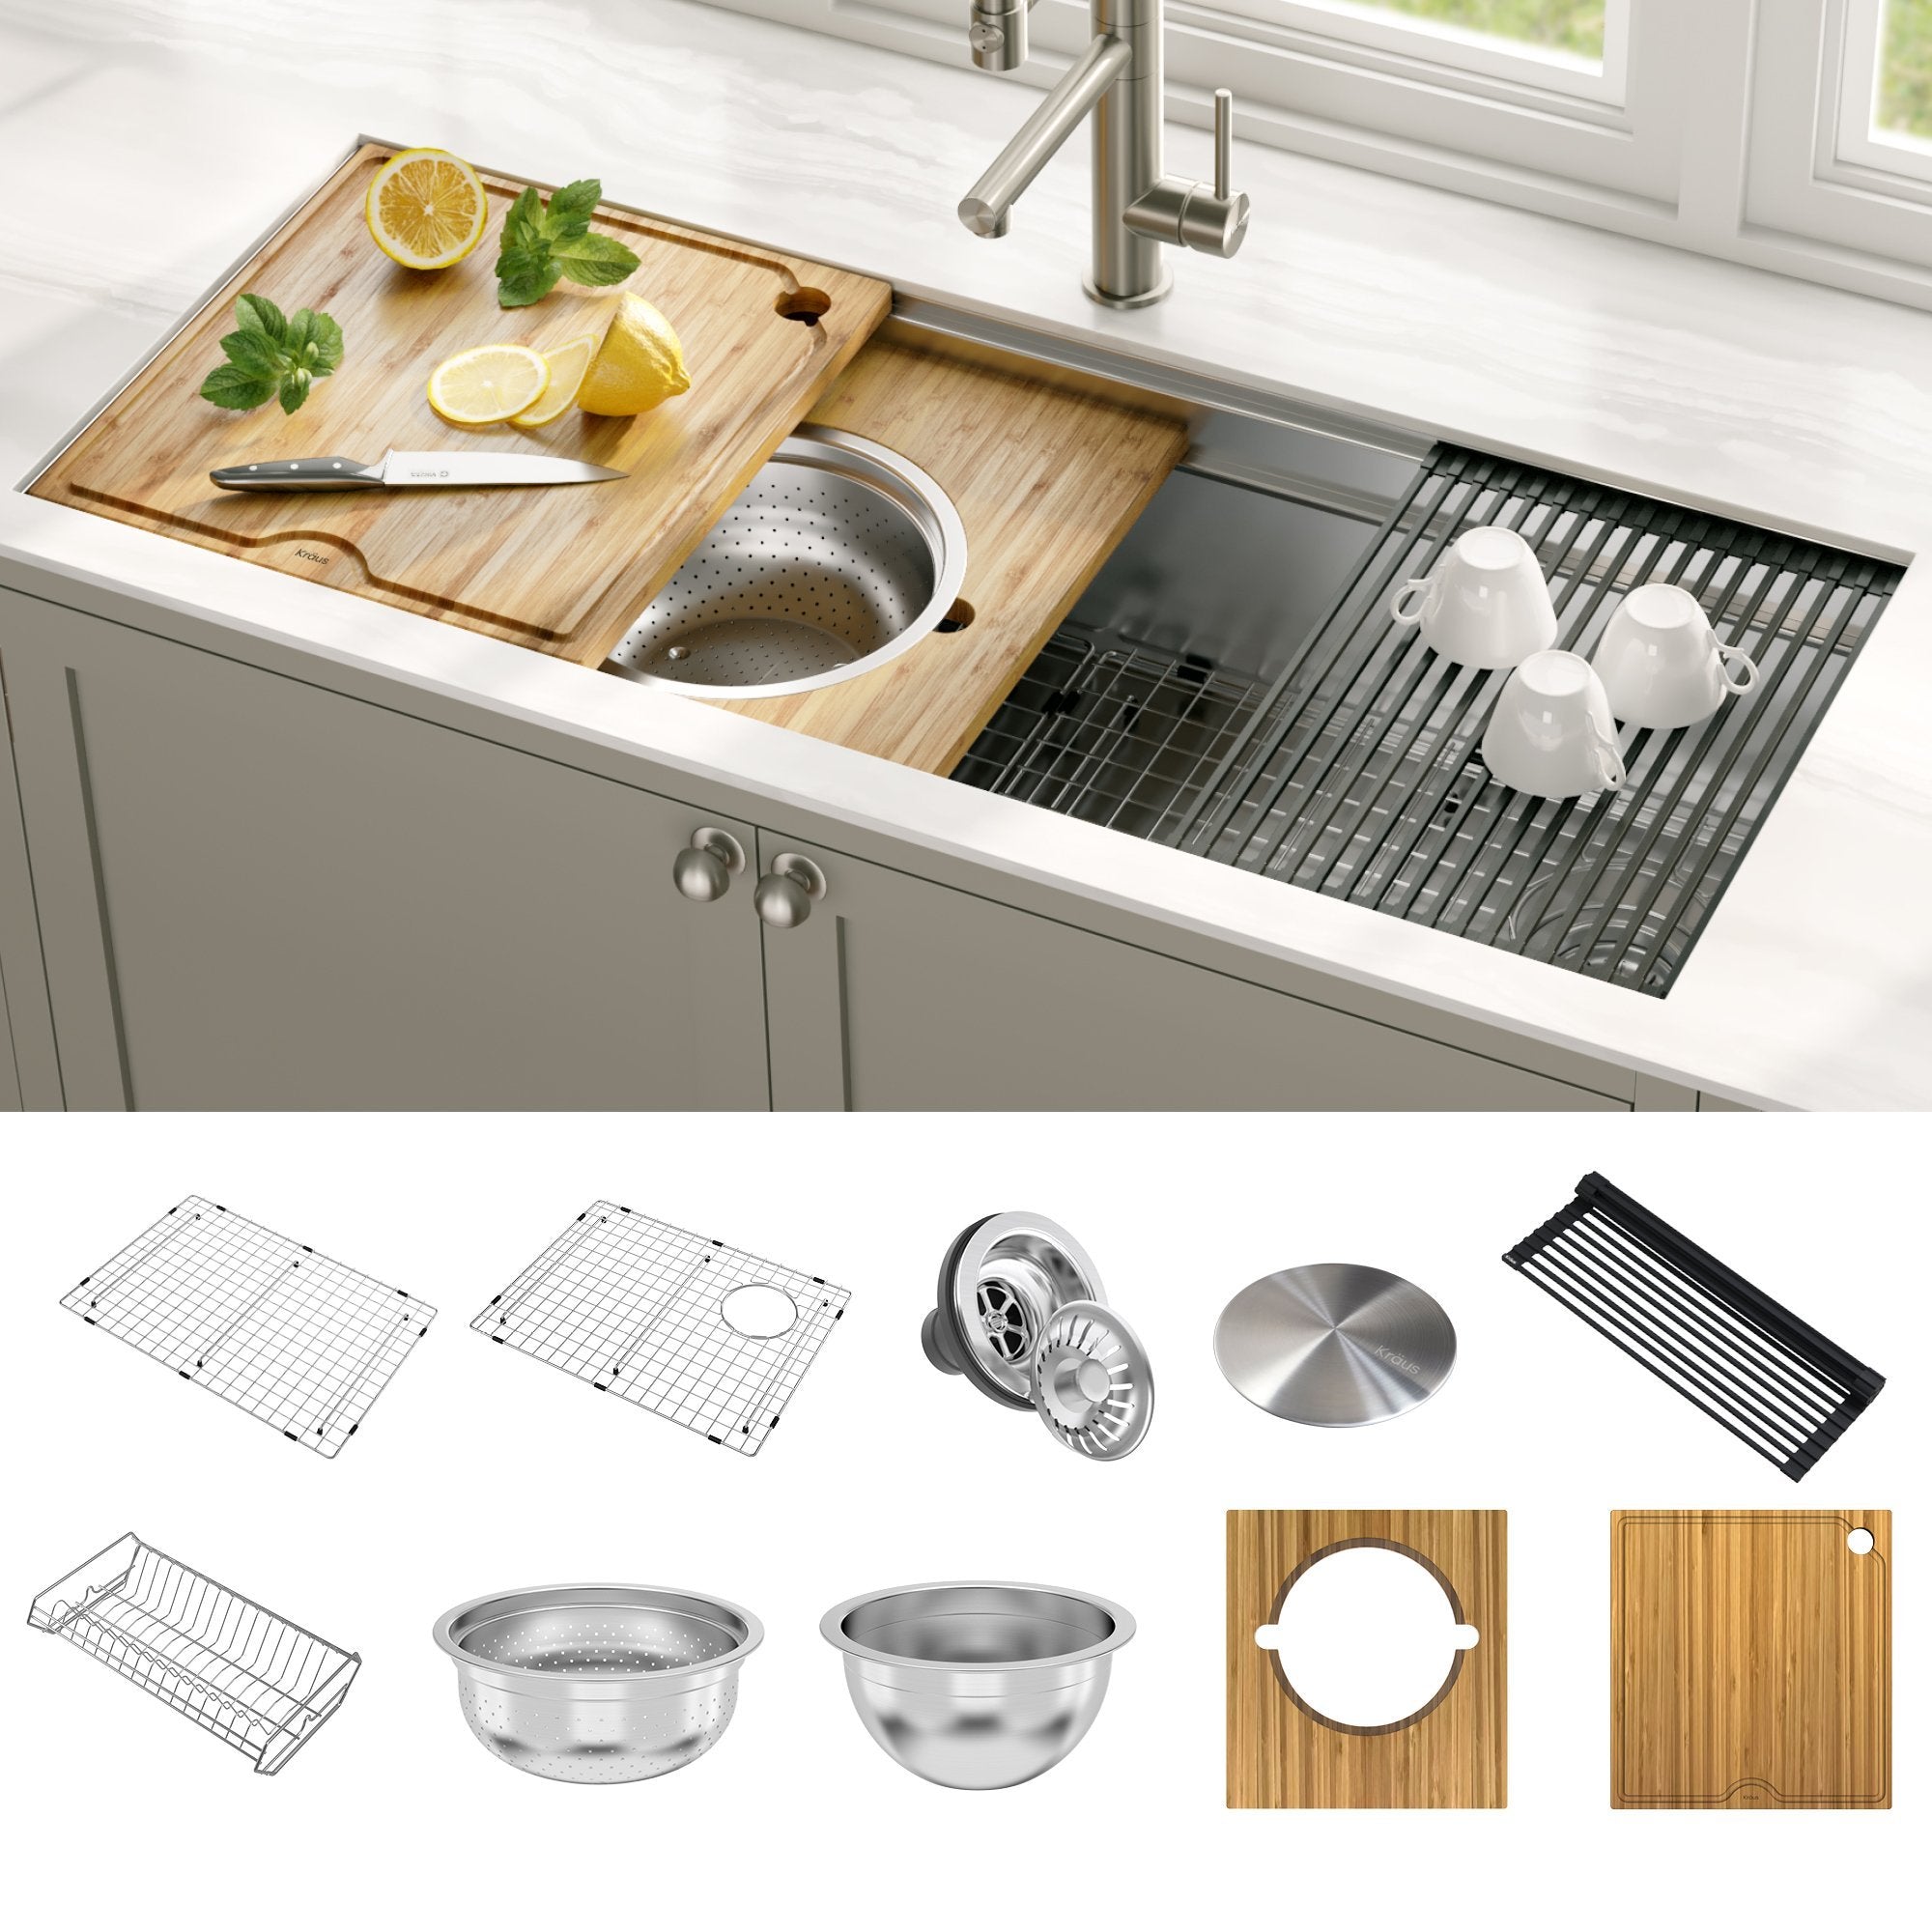 KRAUS Kore™ 2-Tier Workstation 45-inch Undermount 16 Gauge Single Bowl Stainless Steel Kitchen Sink with Accessories-DirectSinks